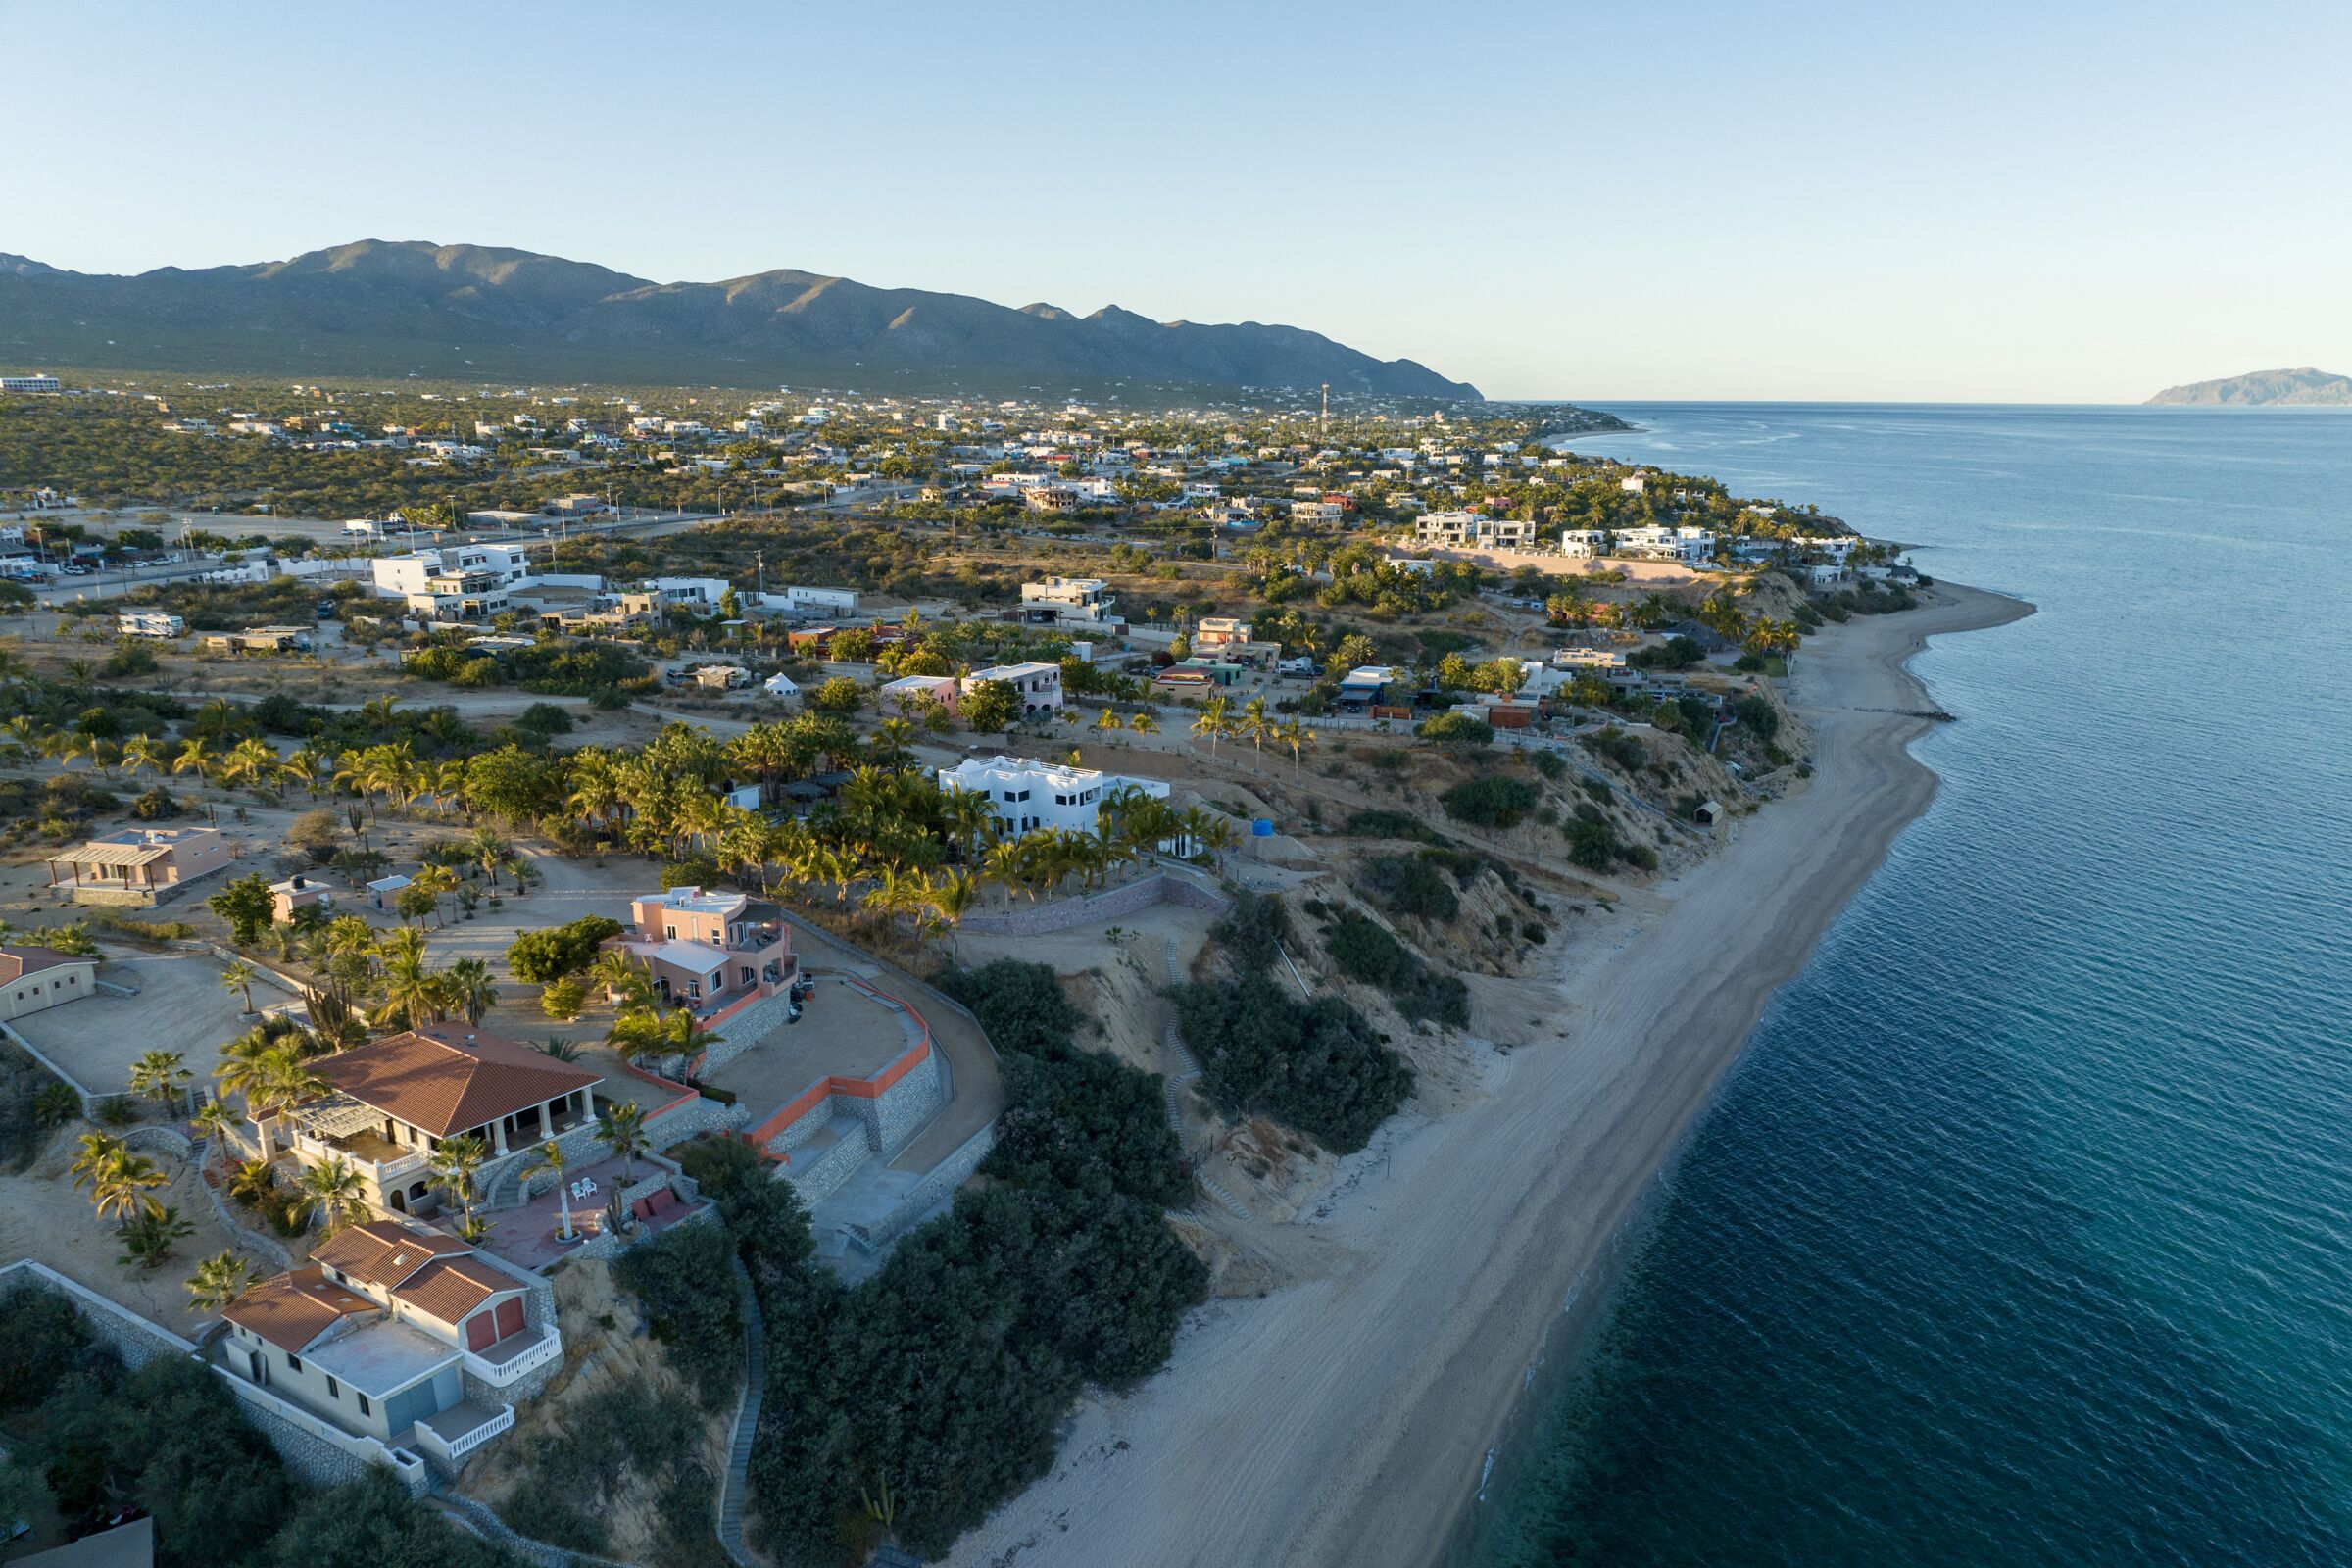 Luxury beachfront properties line the shore 